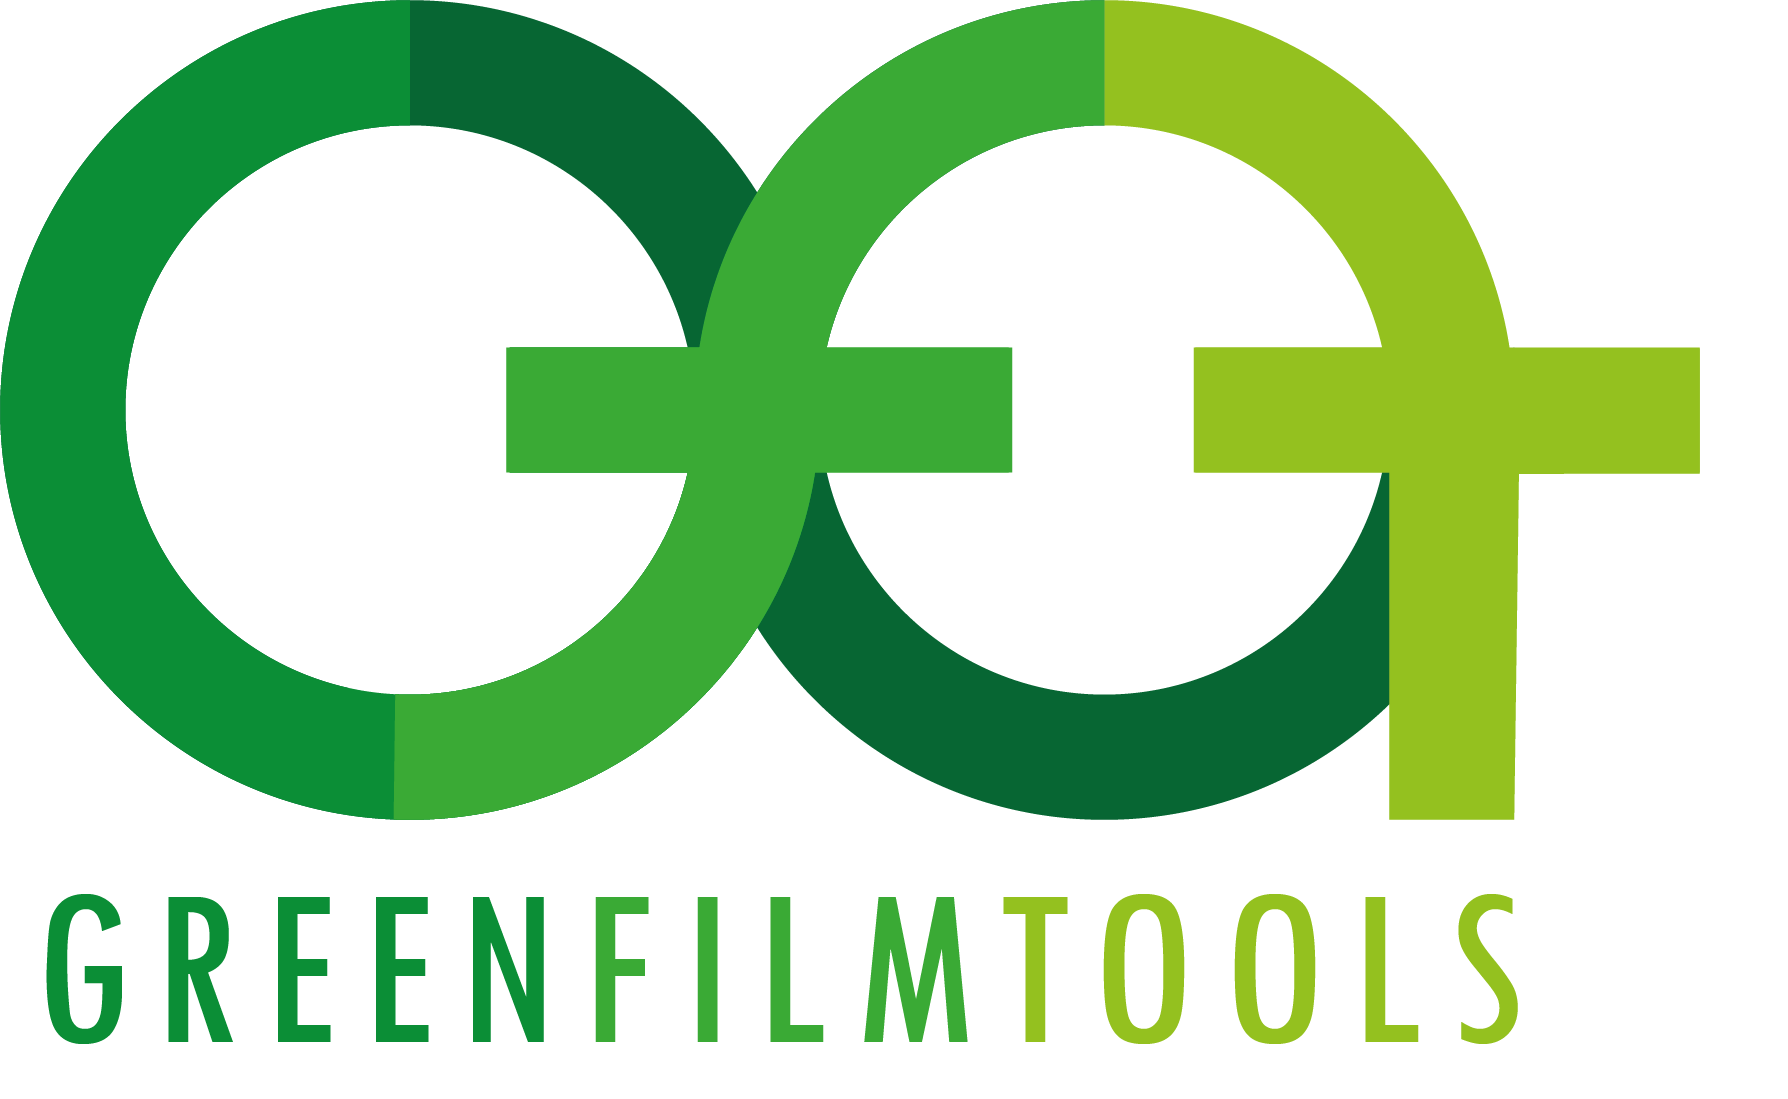 Green Film Tools Logo